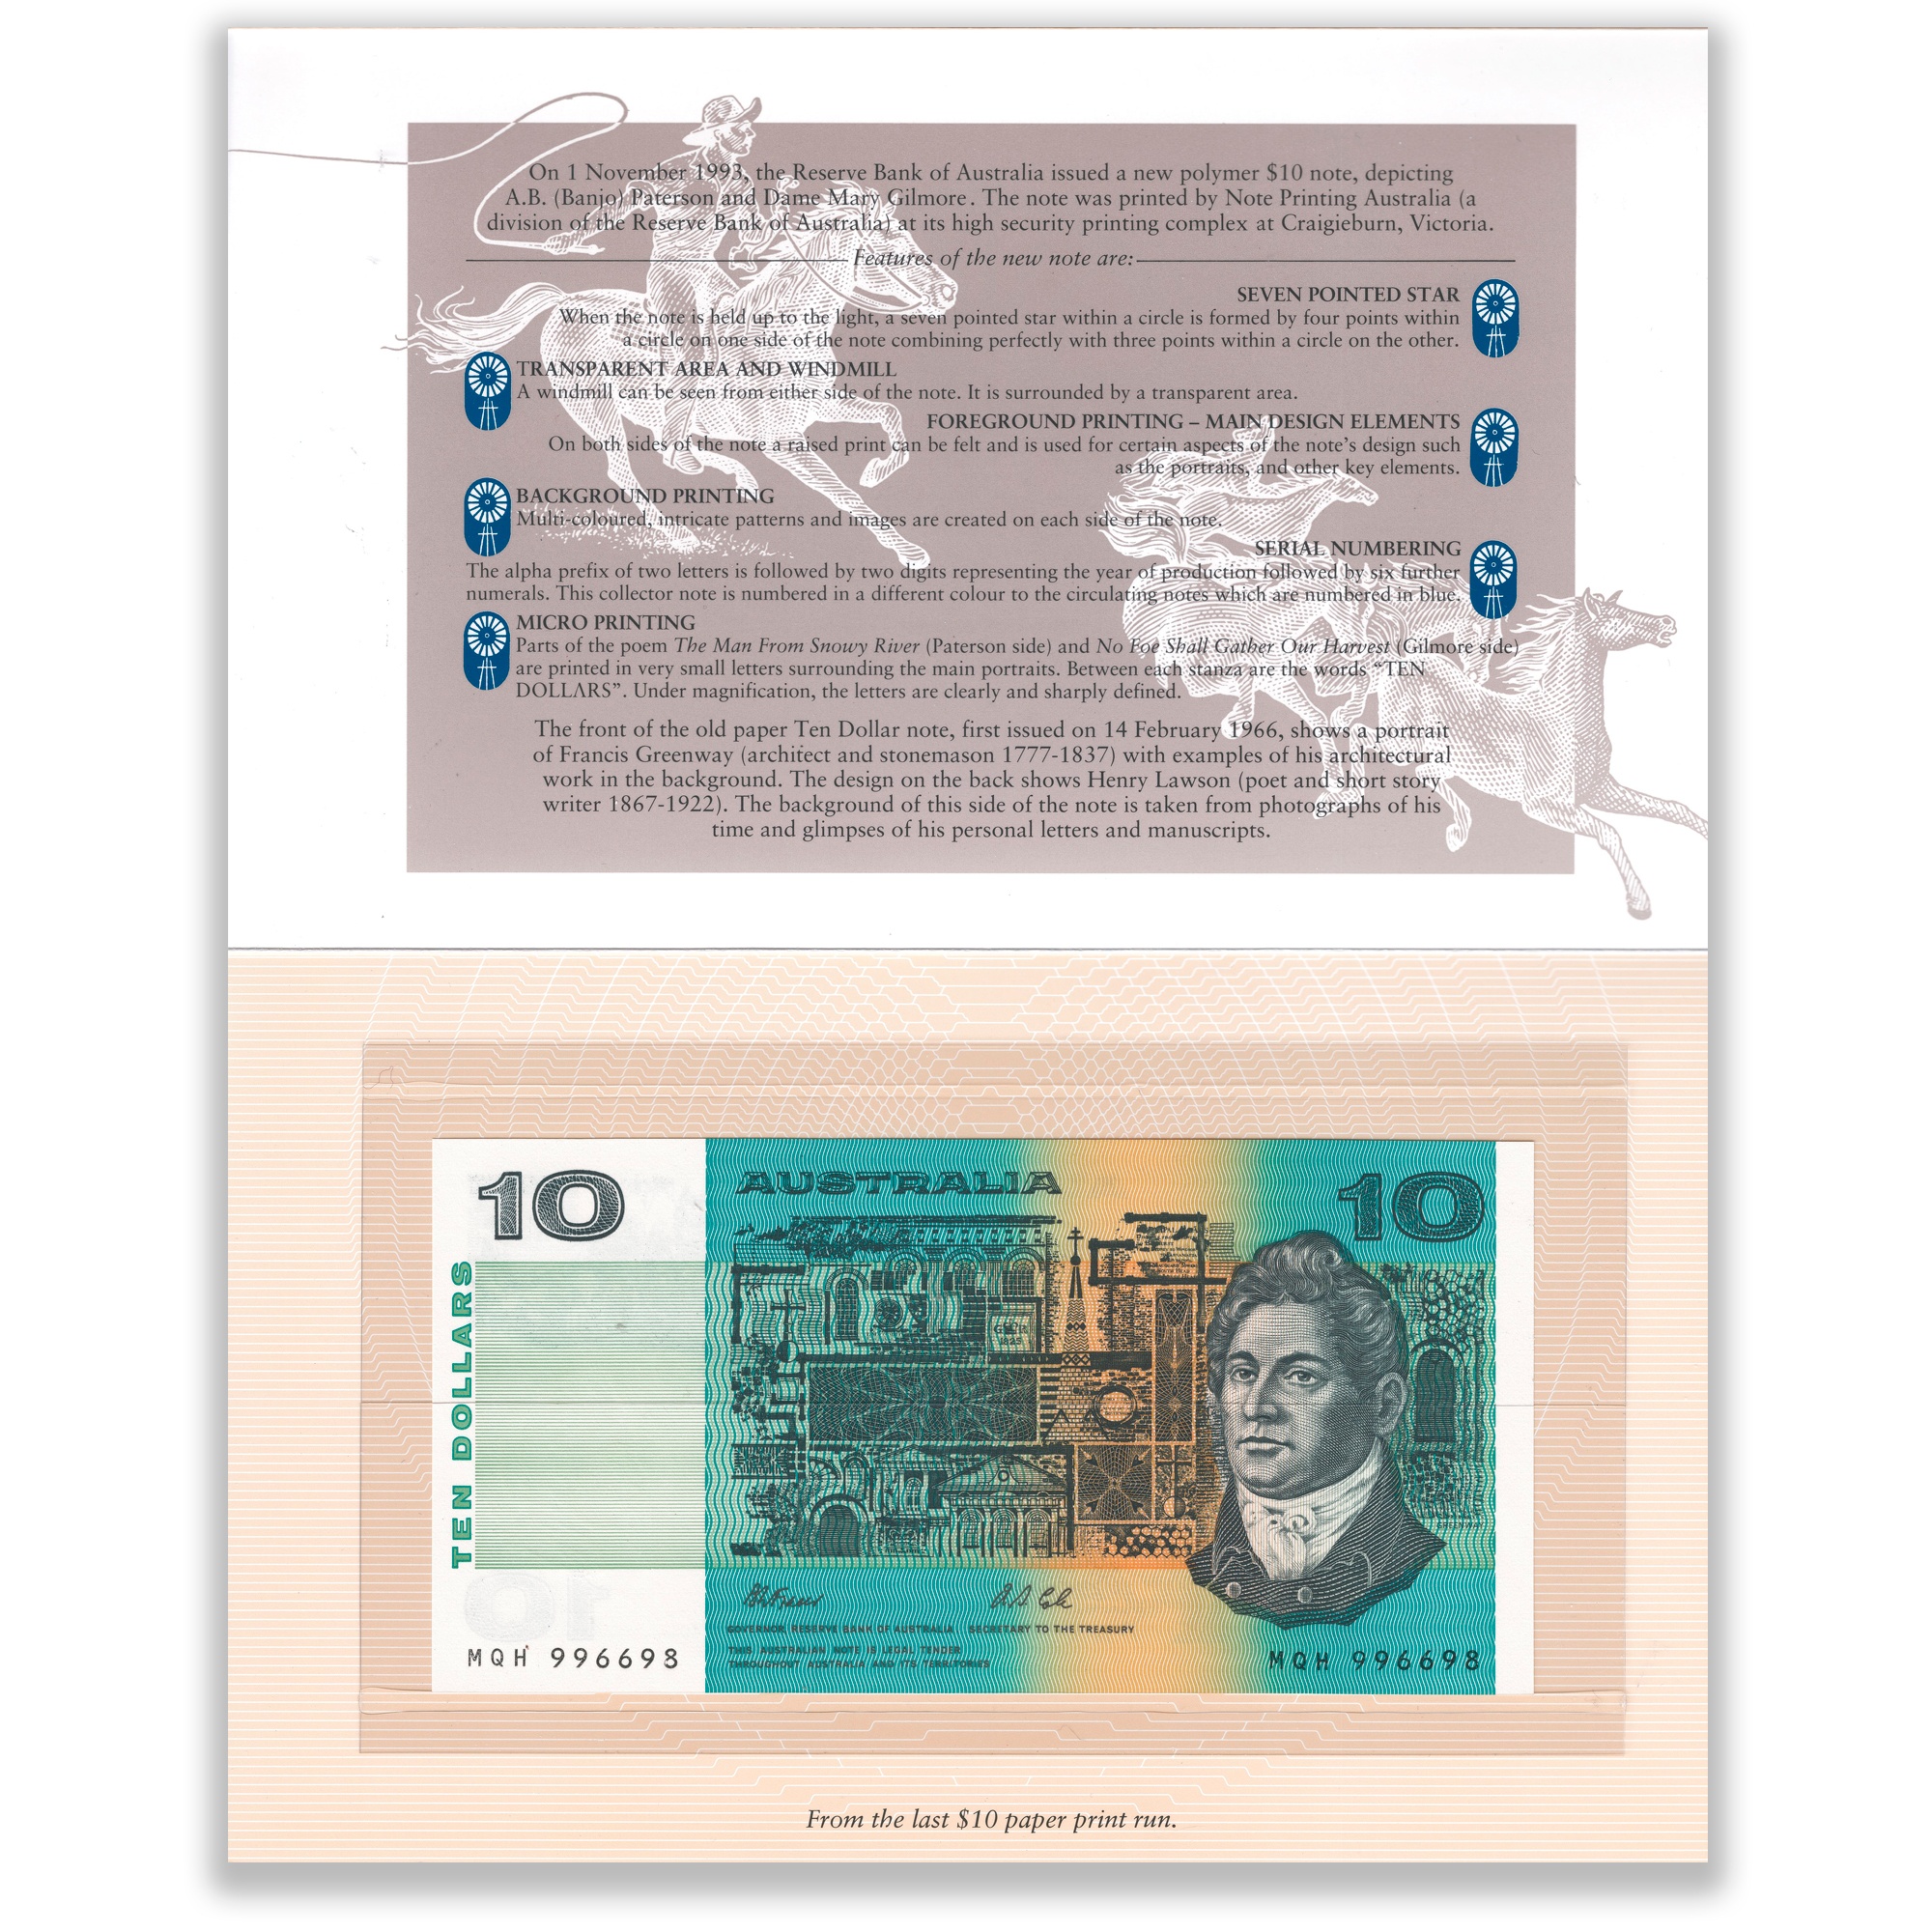 1993 $10 Banknote Folder